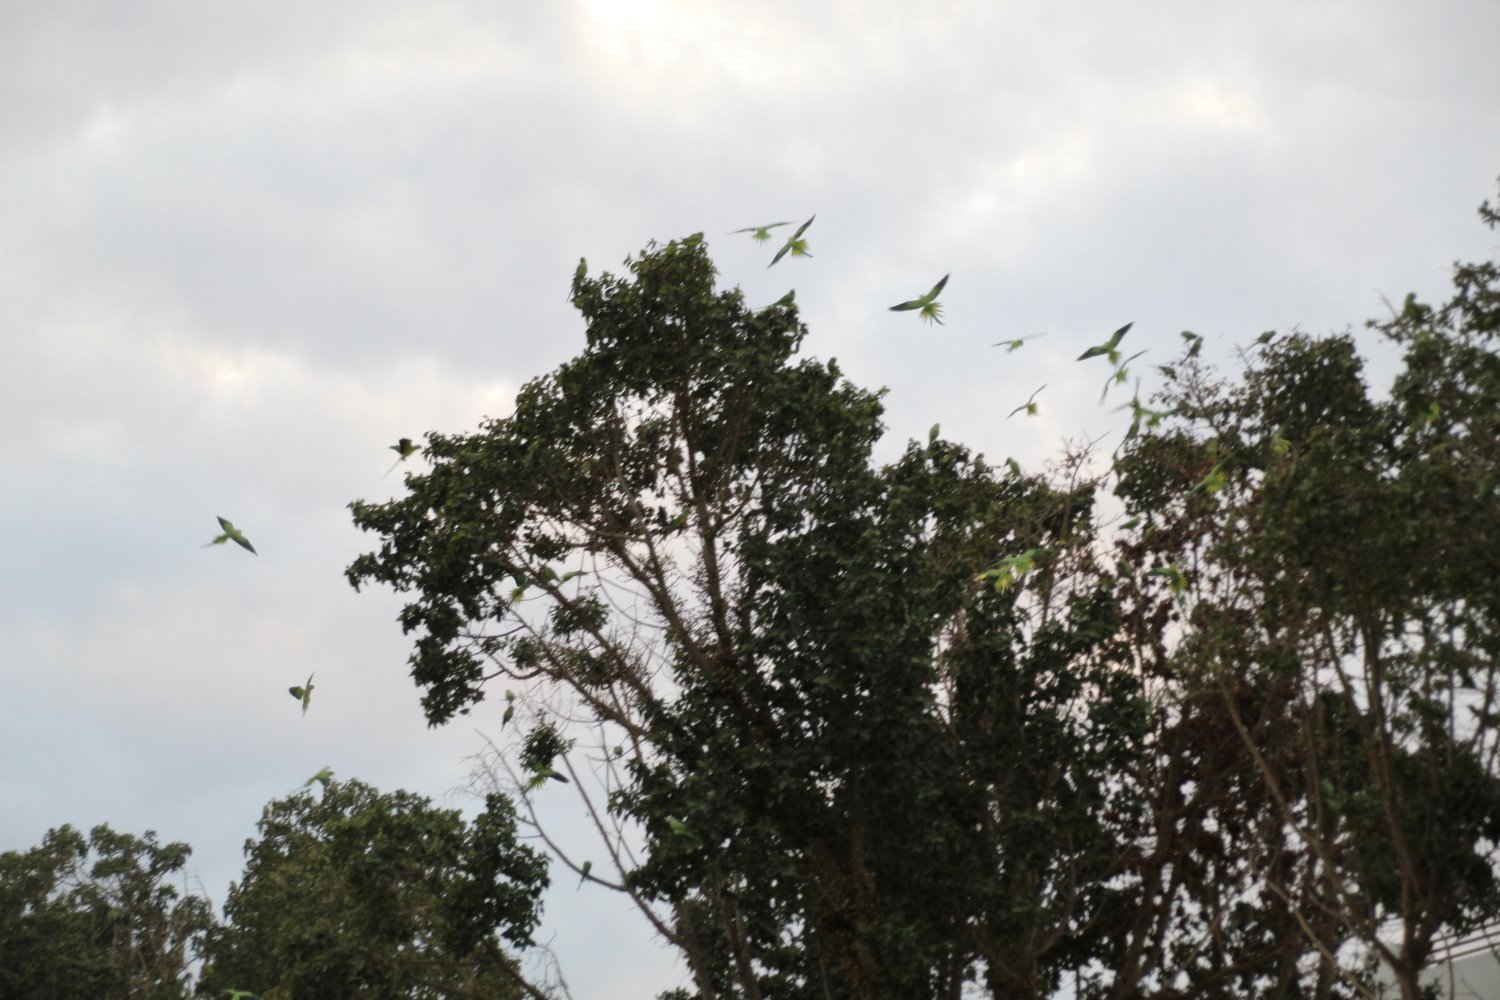 תוכי דררה משתלטים על צמרות העצים באשדוד | צילום: שמואל סרדינס